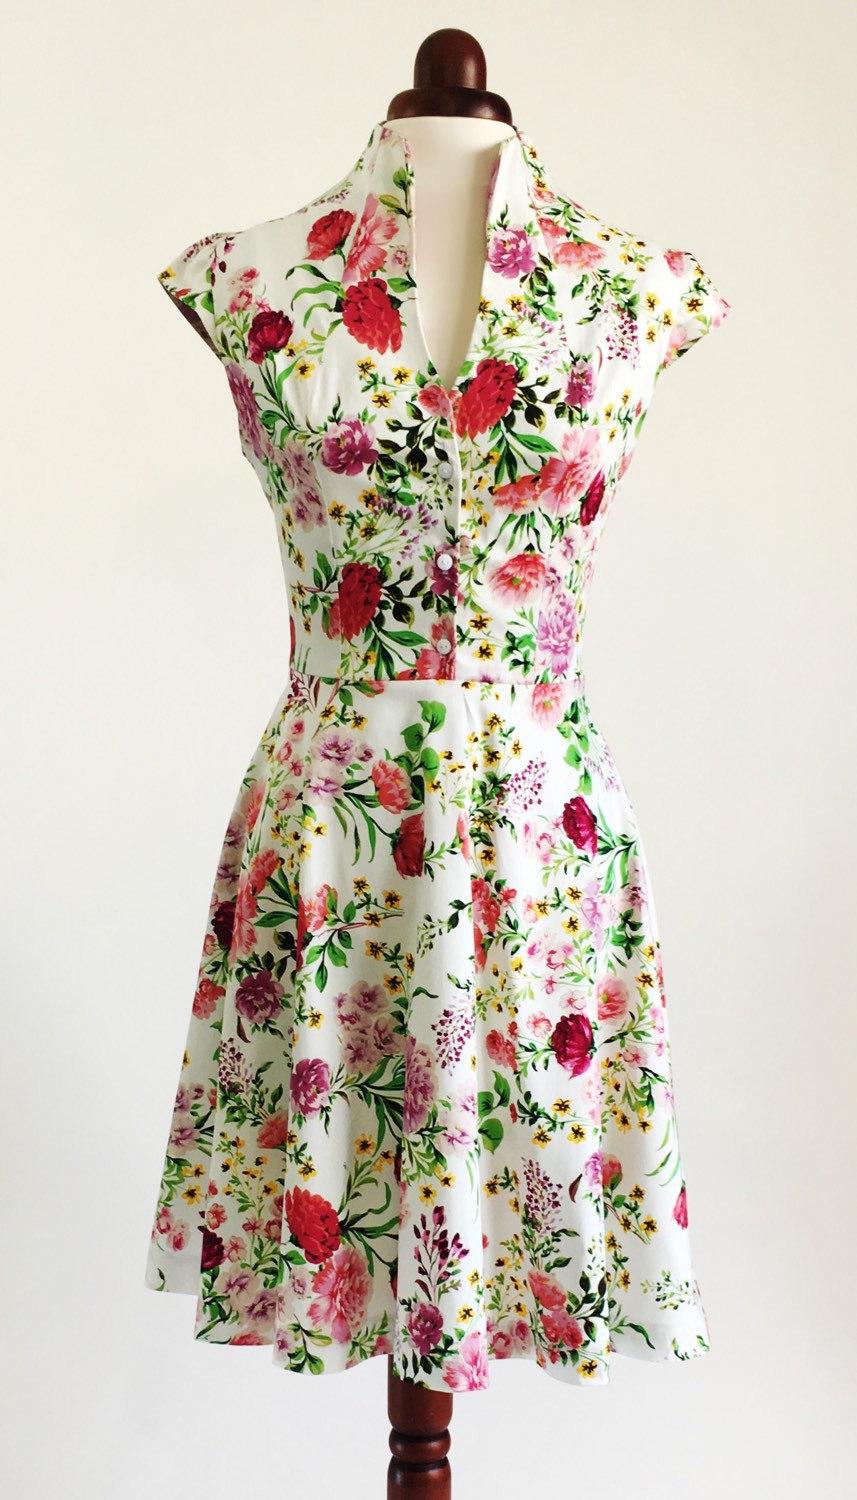 Hochzeit - Spring flower dress, floral dress, summer dress, vintage style dress, mid-length dress, cotton dress, 50s dress, garden party dress, SS16